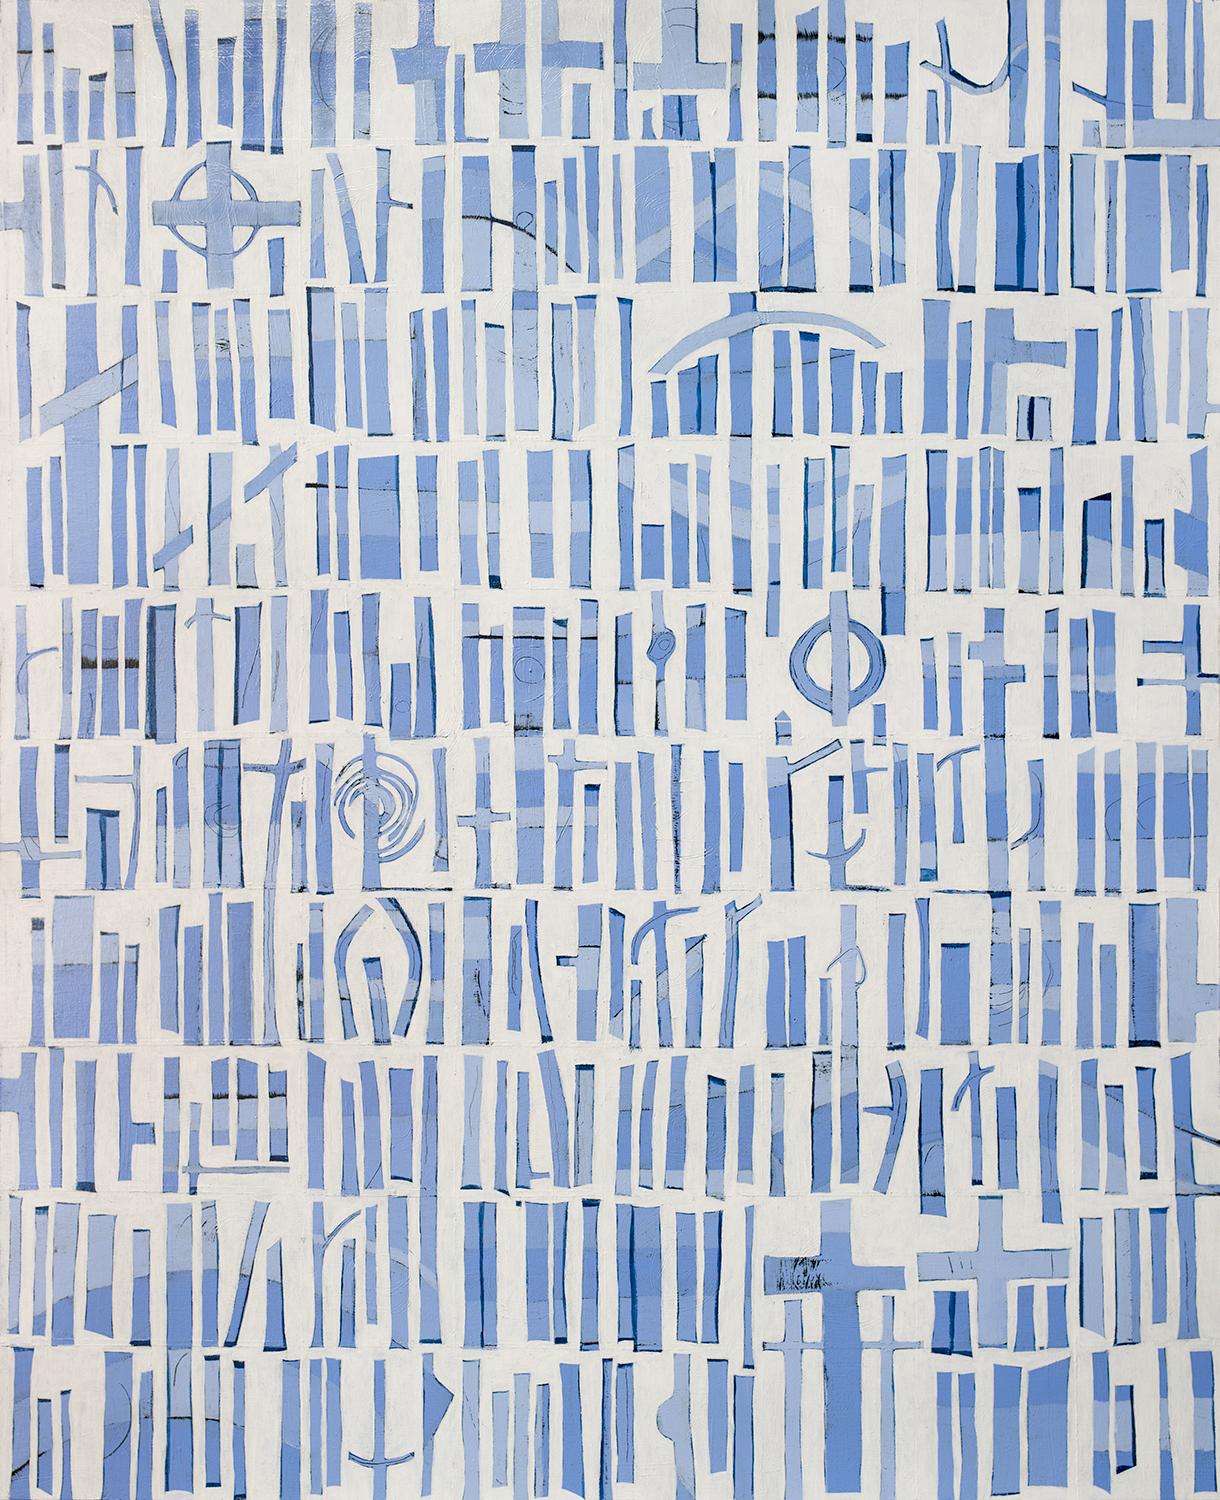 Abstract Print Sofie Swann - "Une journée d'été à Nantucket", impression à la giclée en édition limitée, 20" x 16".